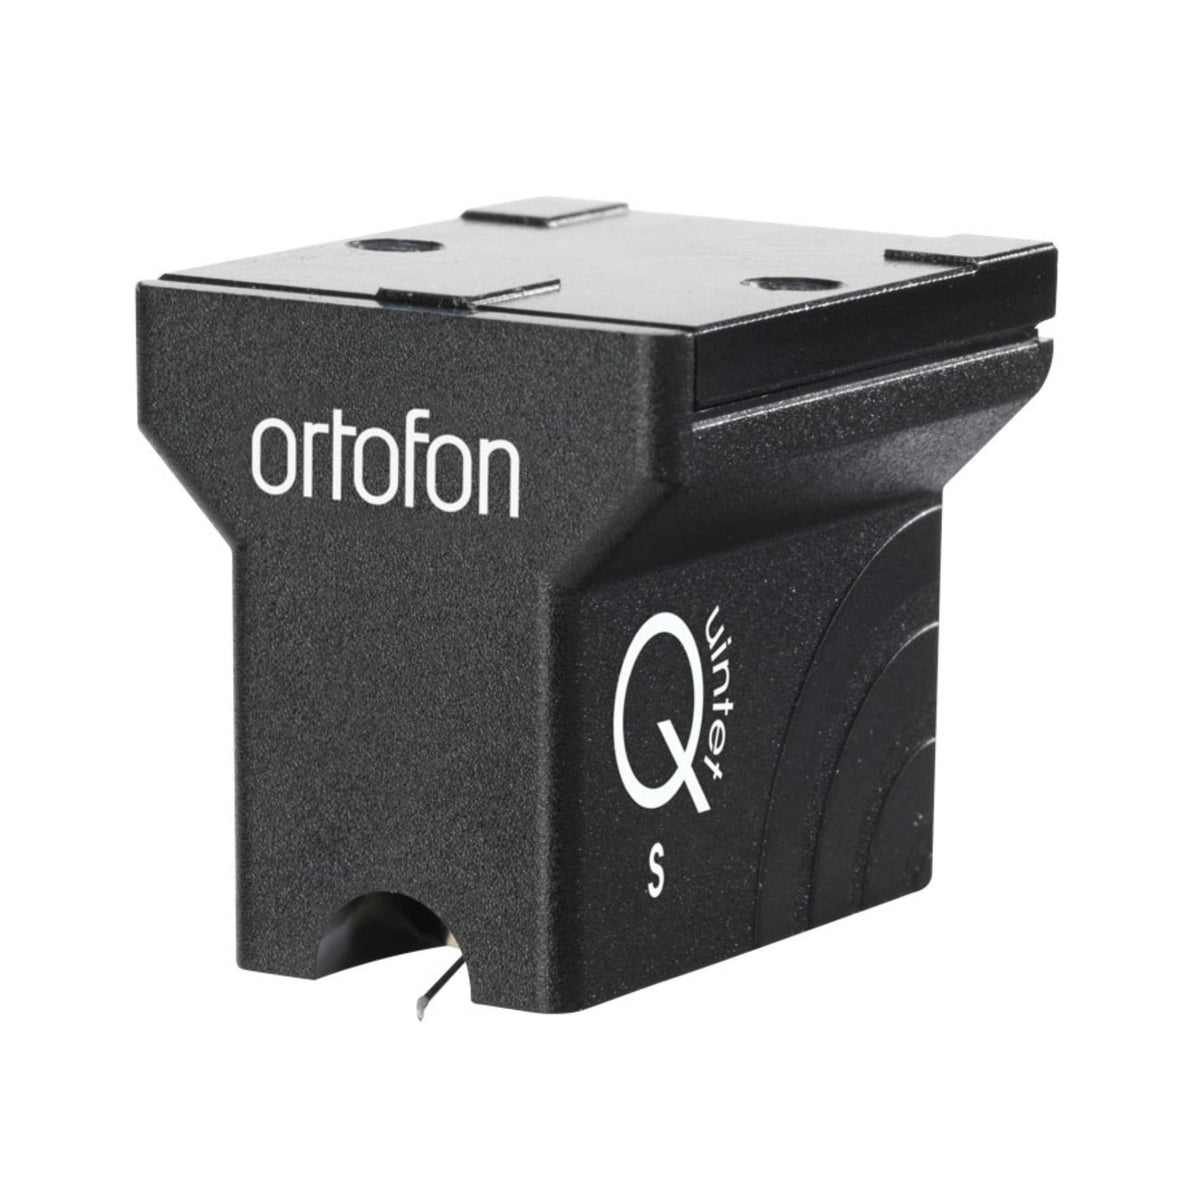 Ortofon MC Quintet Black S, Ortofon, Turntable Accessories - AVStore.in